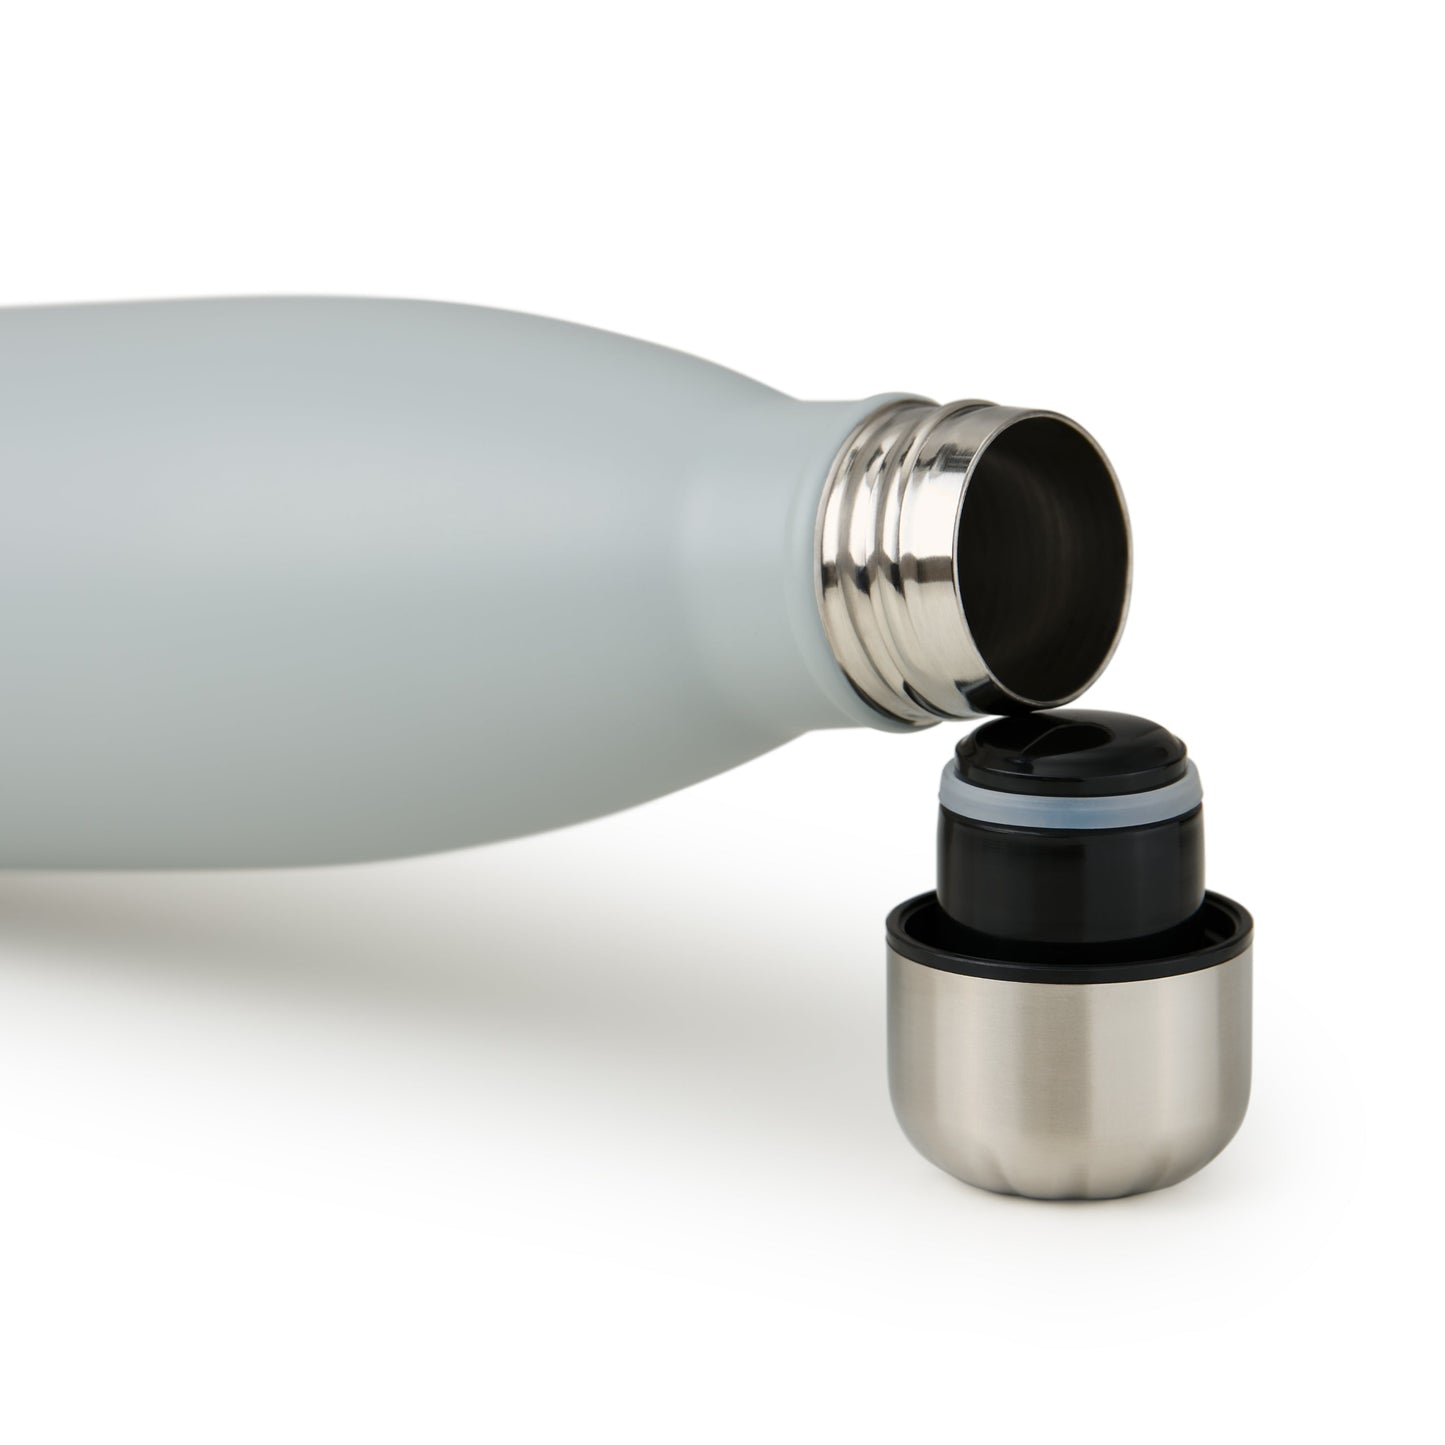 Geöffnete ultimate grau blumtal Edelstahl-Trinkflasche mit abgeschraubtem Deckel auf weißem Hintergrund.